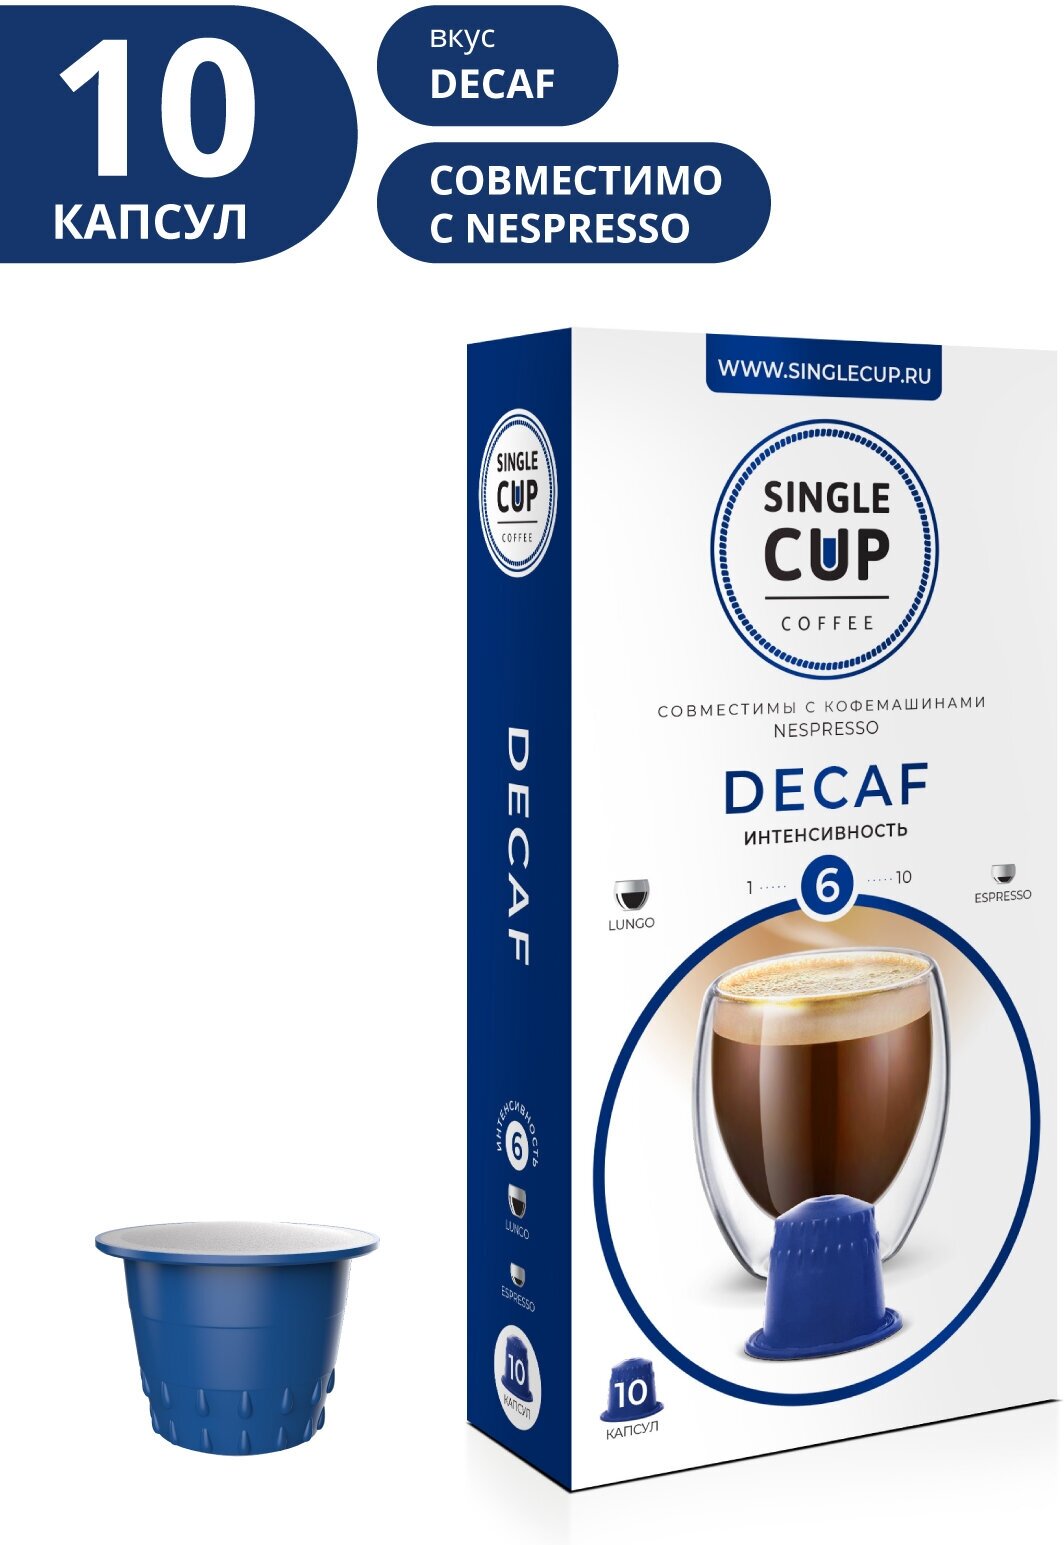 Кофе в капсулах Single Cup Coffee "Decaf" формата Nespresso (Неспрессо), 10 шт.